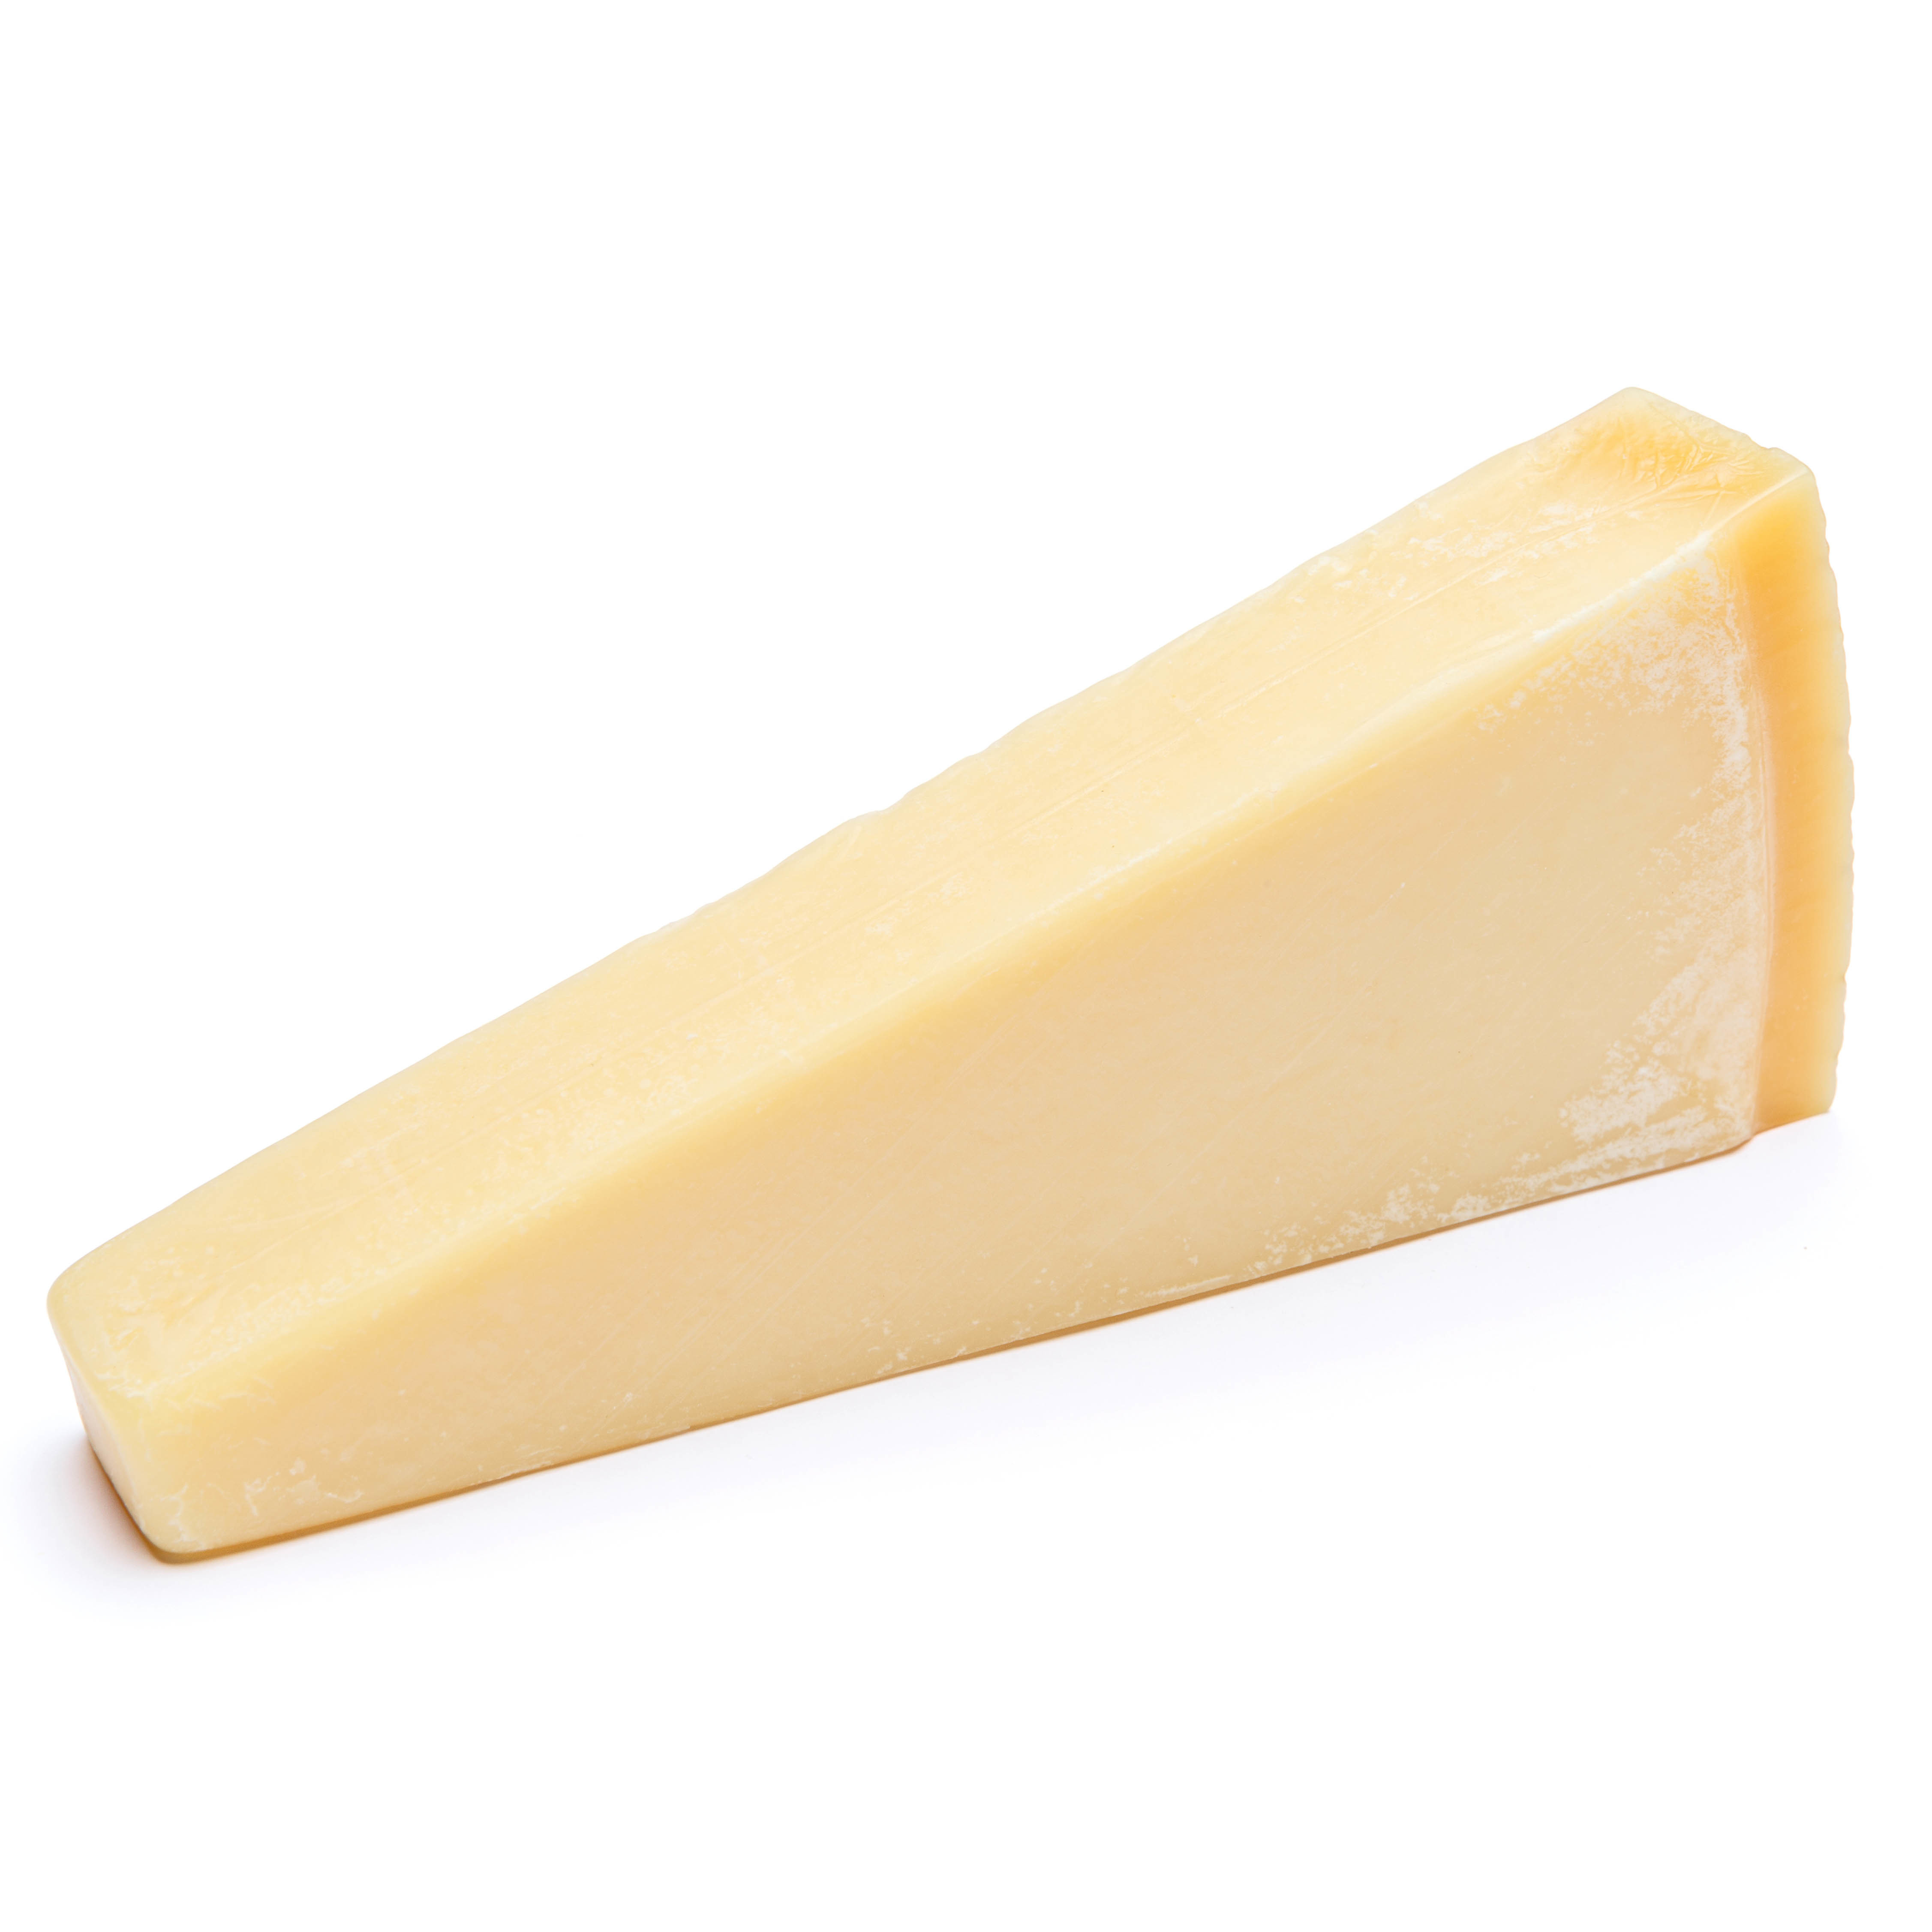 Gran Moravia Parmesan Cheese - Italy